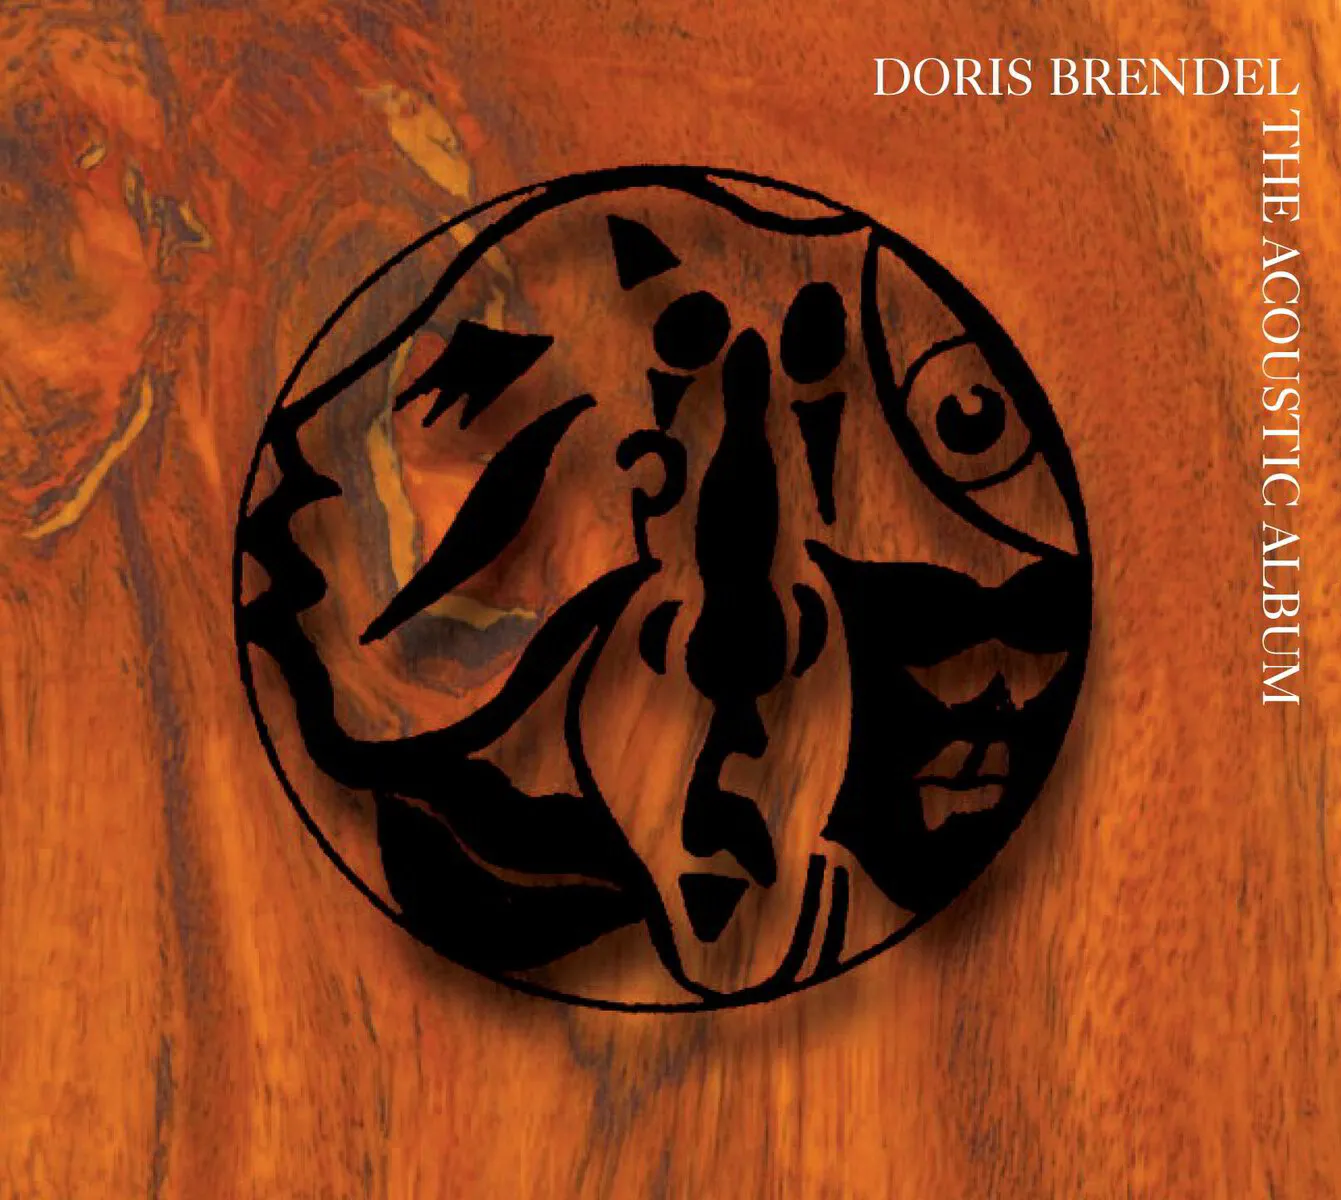 The Acoustic Album - Doris Brendel - Digital Album